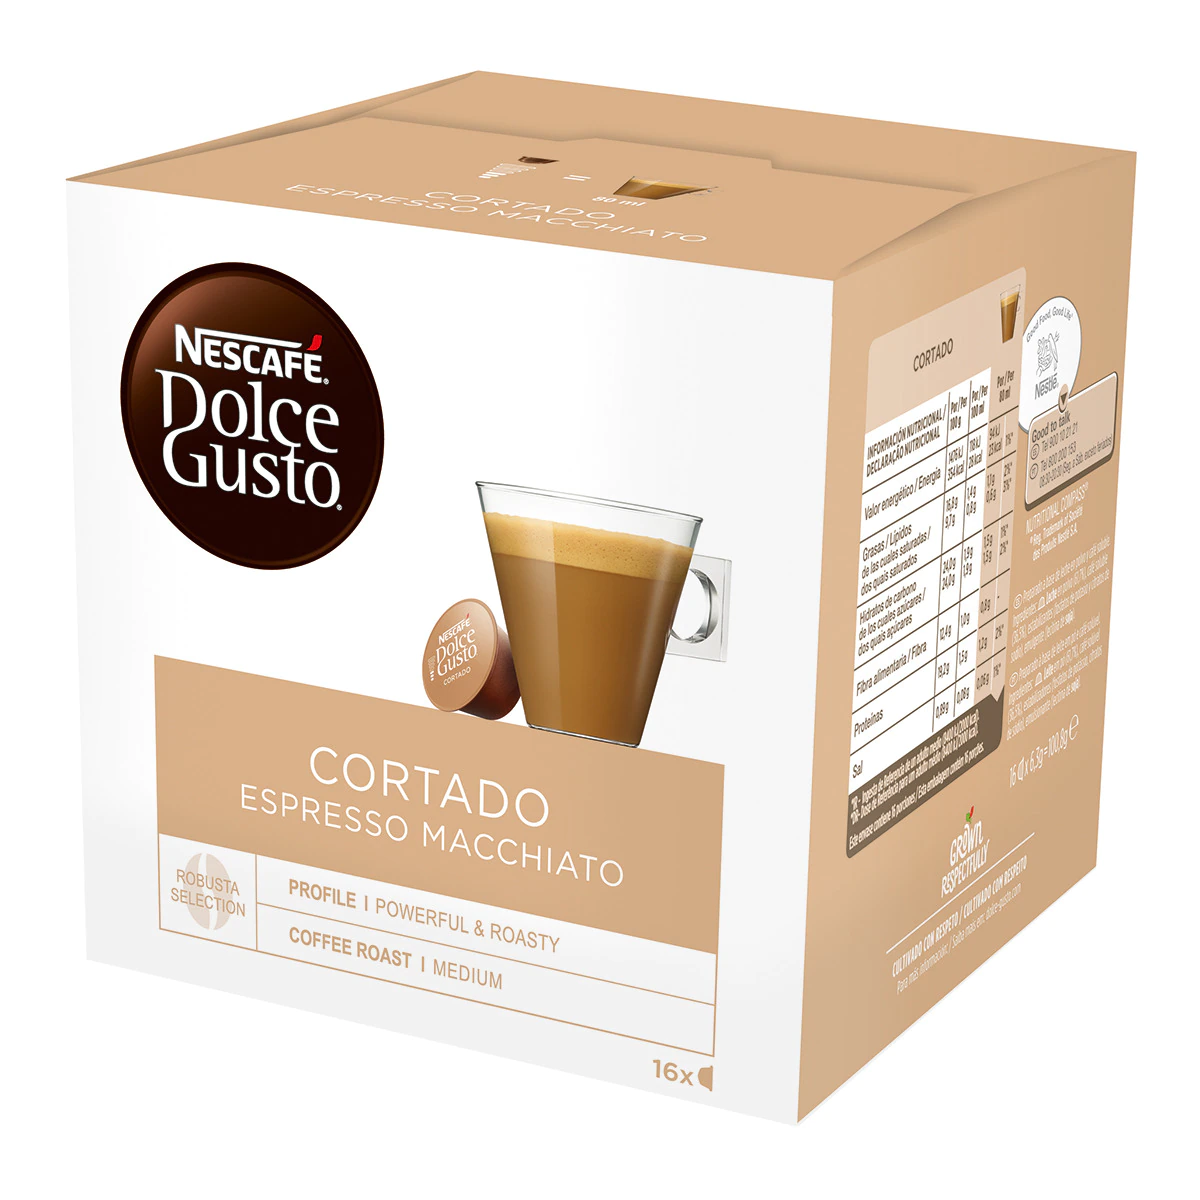 Estuche 16 cápsulas NESCAFE DOLCE GUSTO café Cortado Espresso Macchiatto selección de arábica y robusta